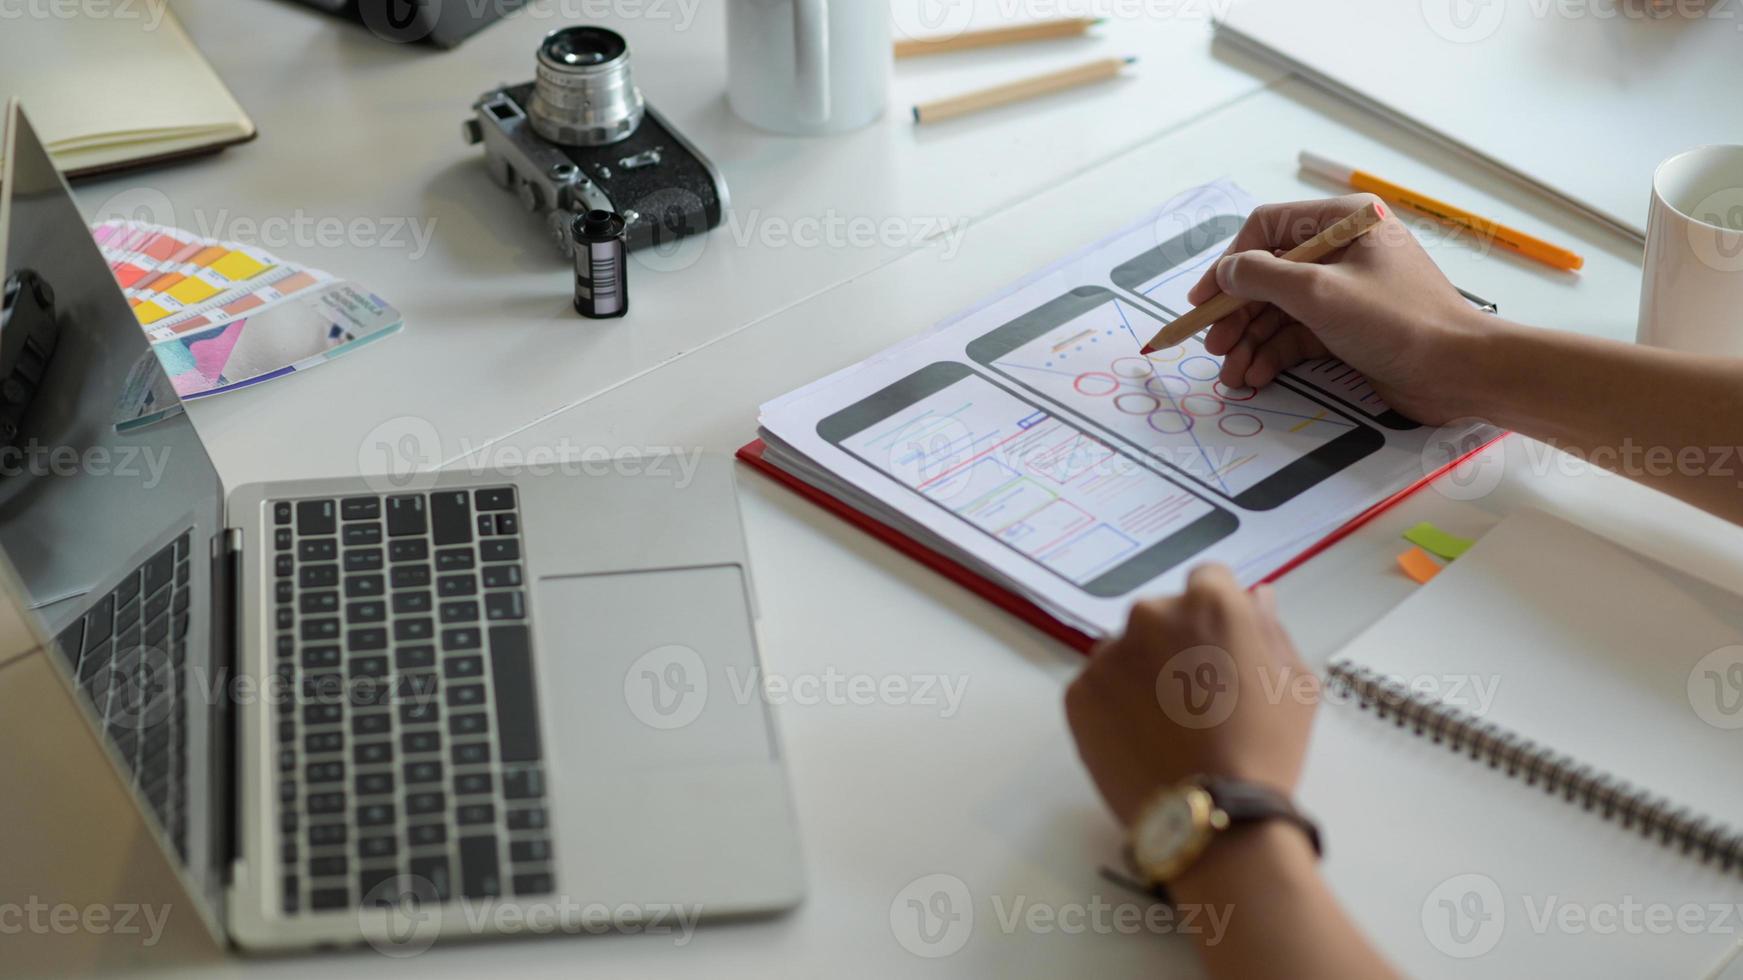 designer sta disegnando uno schermo per smartphone per i futuri clienti sulla scrivania con laptop e articoli di cancelleria. foto